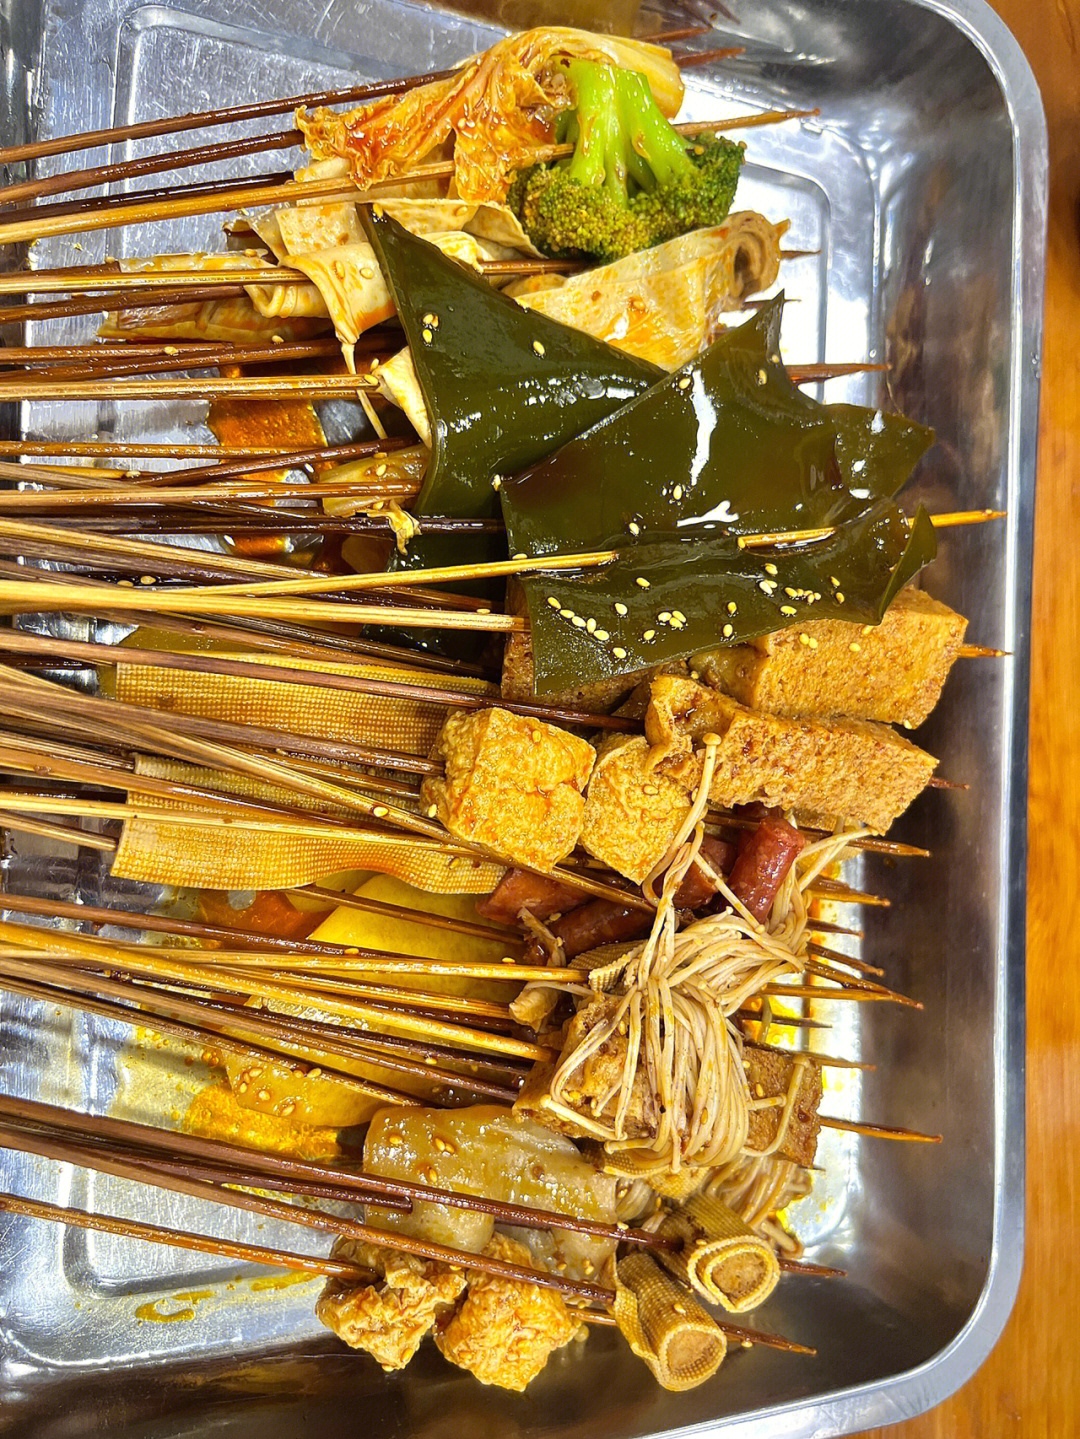 冷锅串串的菜品清单图片